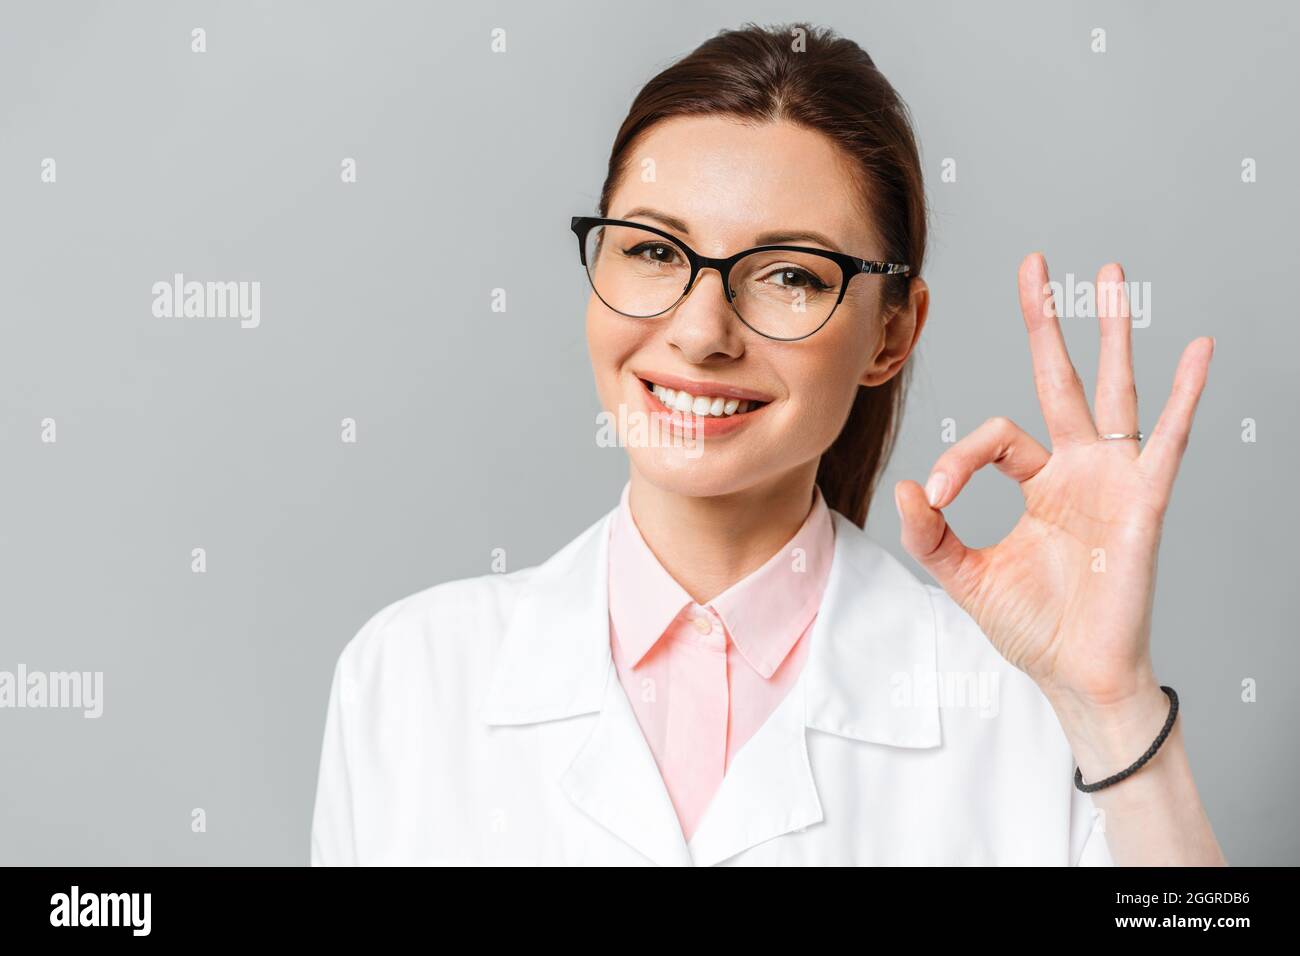 Portrait d'un médecin dentiste heureux. Magnifique sourire féminin. Concept de dentisterie Banque D'Images